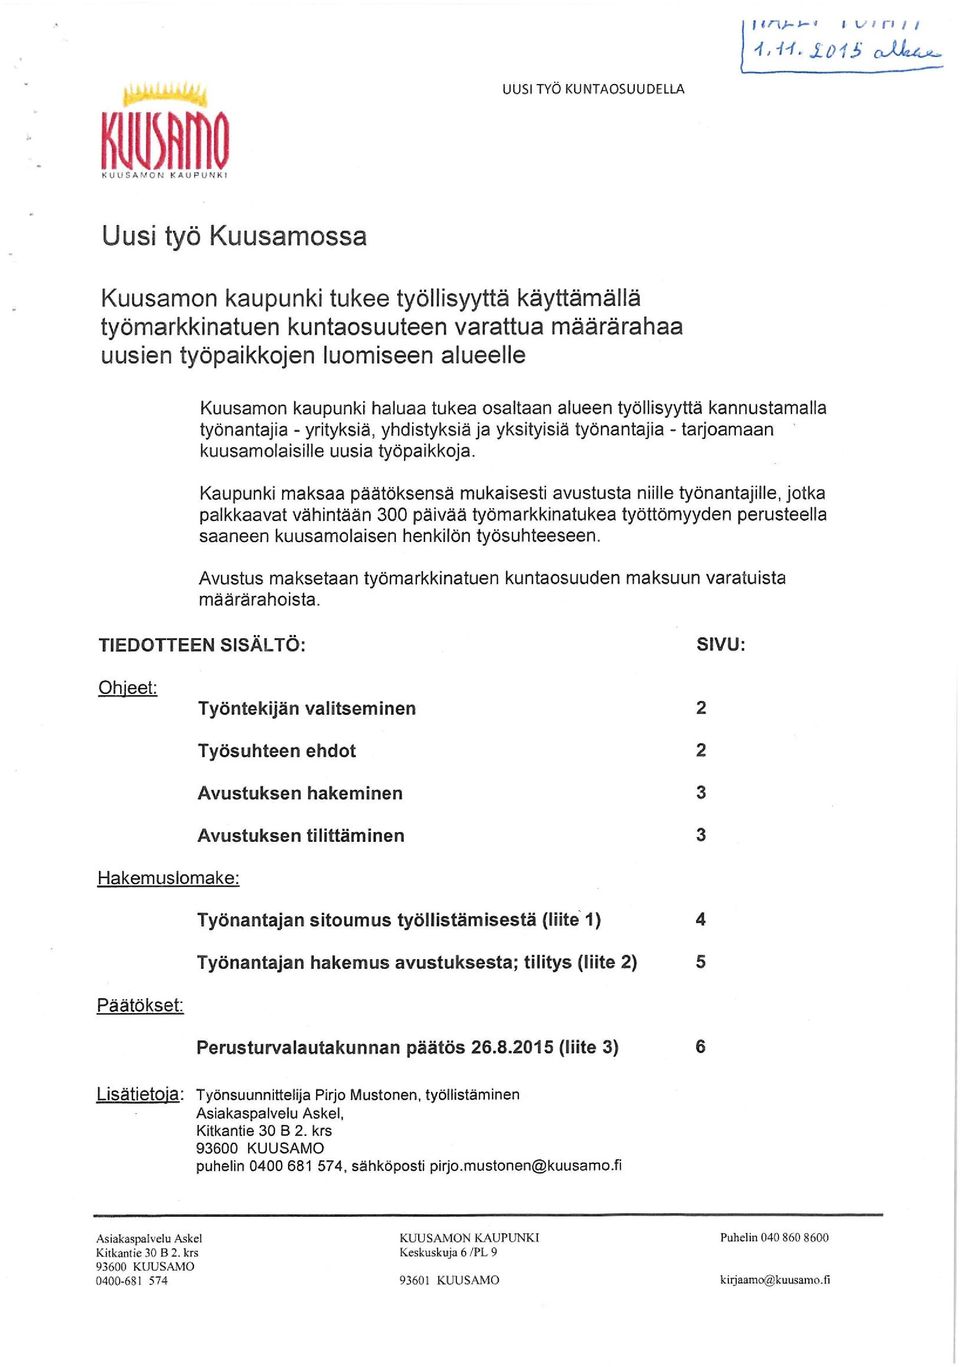 alueelle Kuusamon kaupunki haluaa tukea osaltaan alueen työllisyyttä kannustamalla työnantajia - yrityksiä, yhdistyksiä ja yksityisiä työnantajia - tarjoamaan kuusamolaisille uusia työpaikkoja.